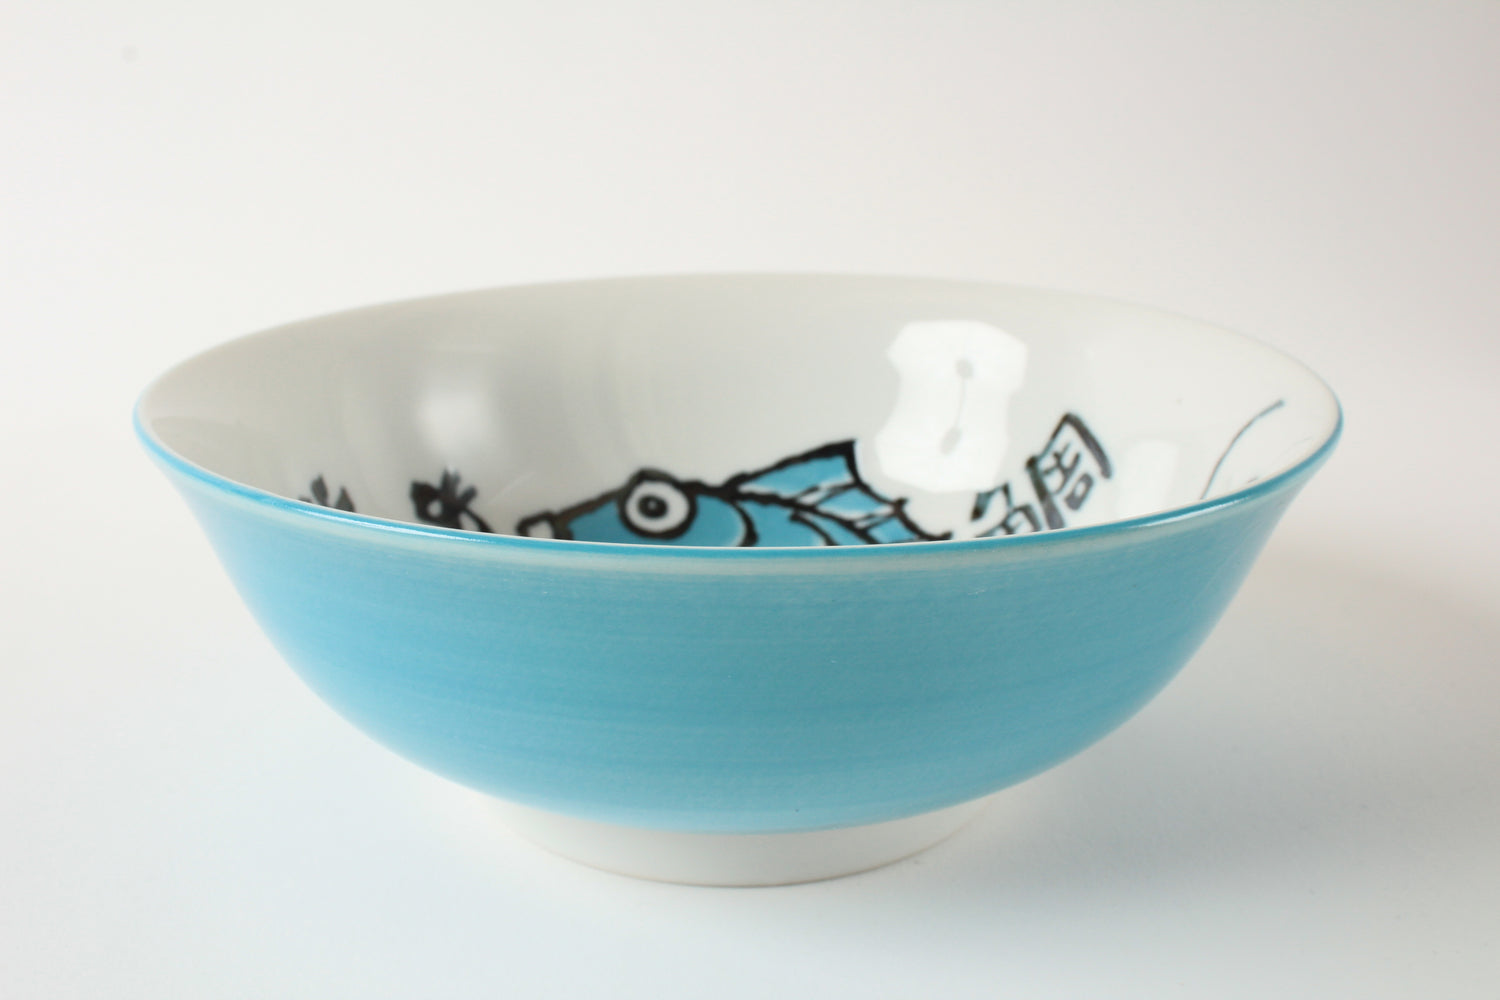 Mino ware Japan Ceramics Medetai Ramen Bowl Blue Sea Bream made in Japan